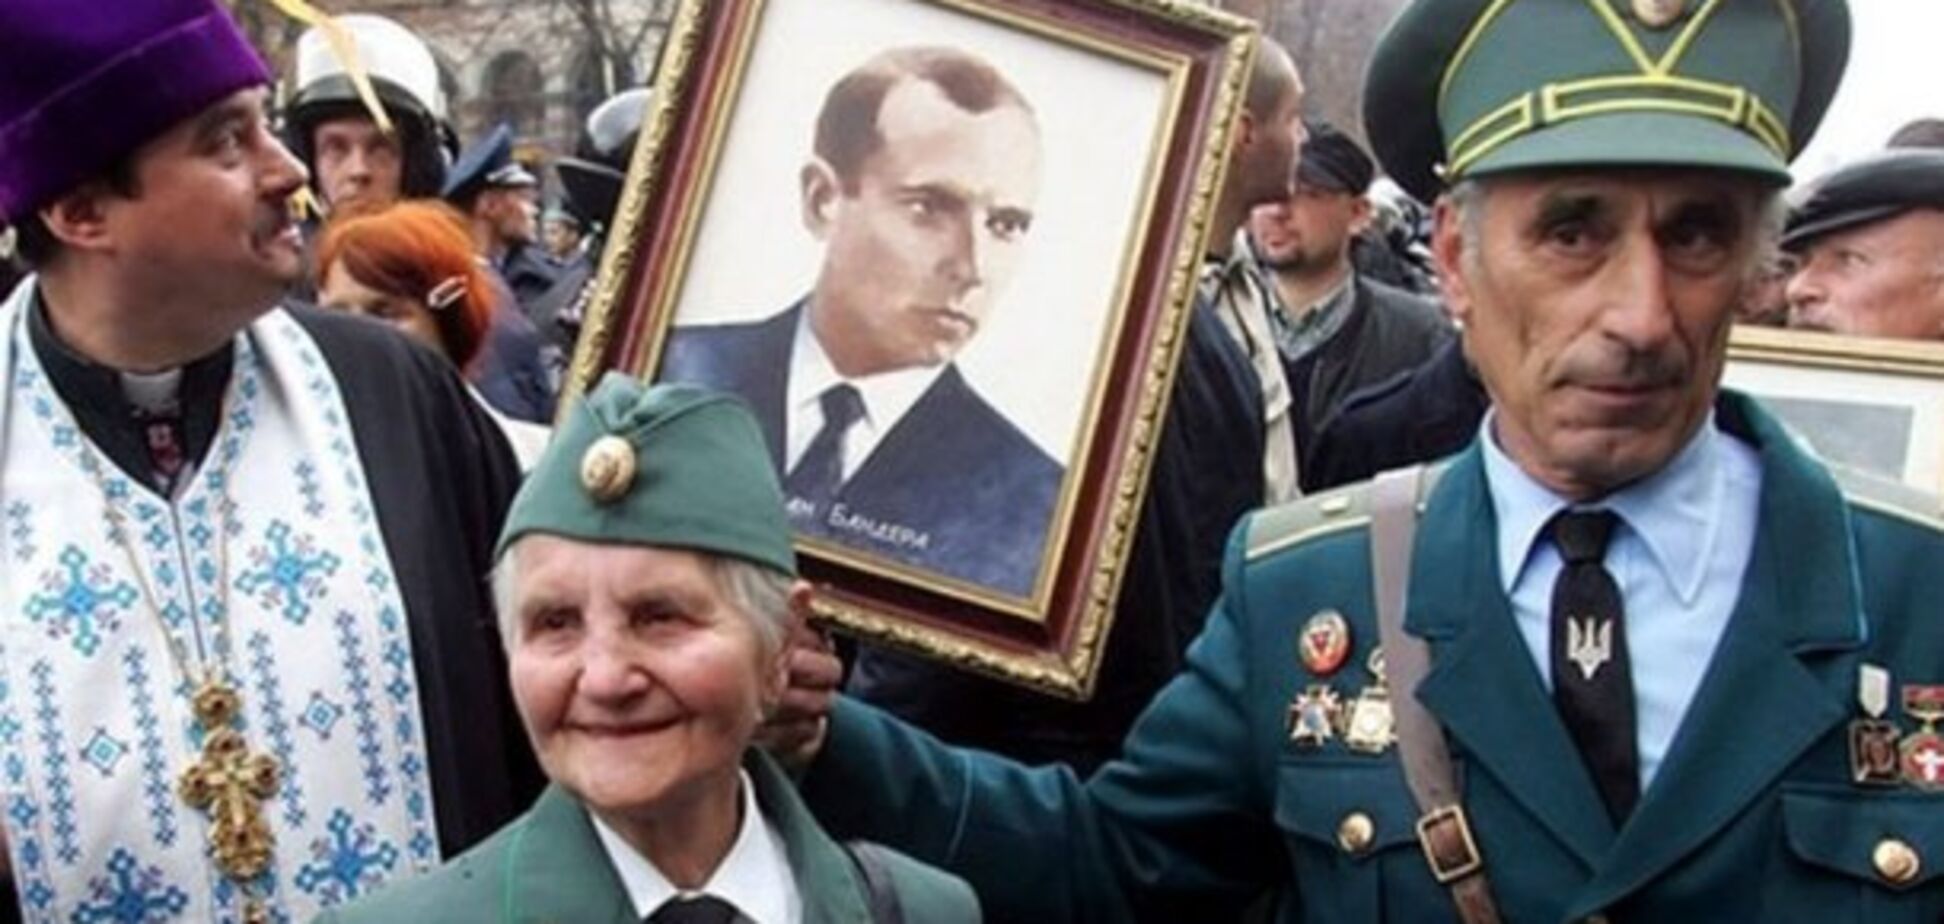 Україна підігрує націоналістичному шабашу поляків